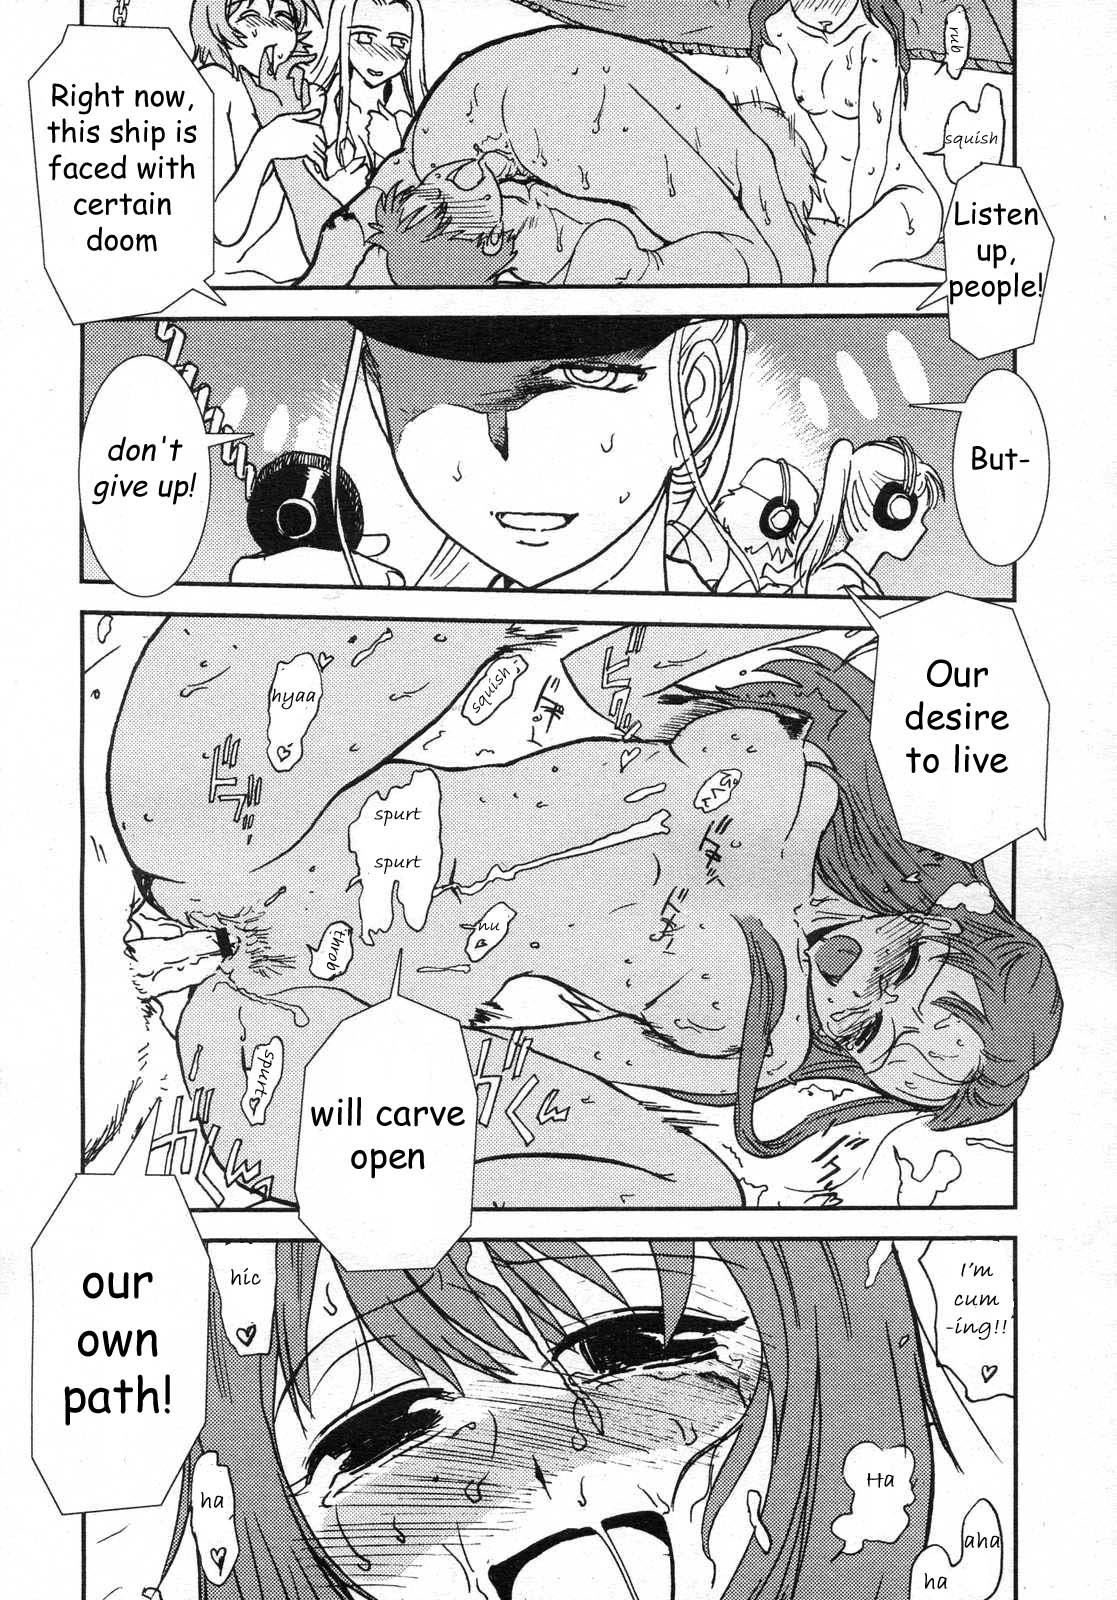 Mitsumei a.k.a. I-404 11 hentai manga